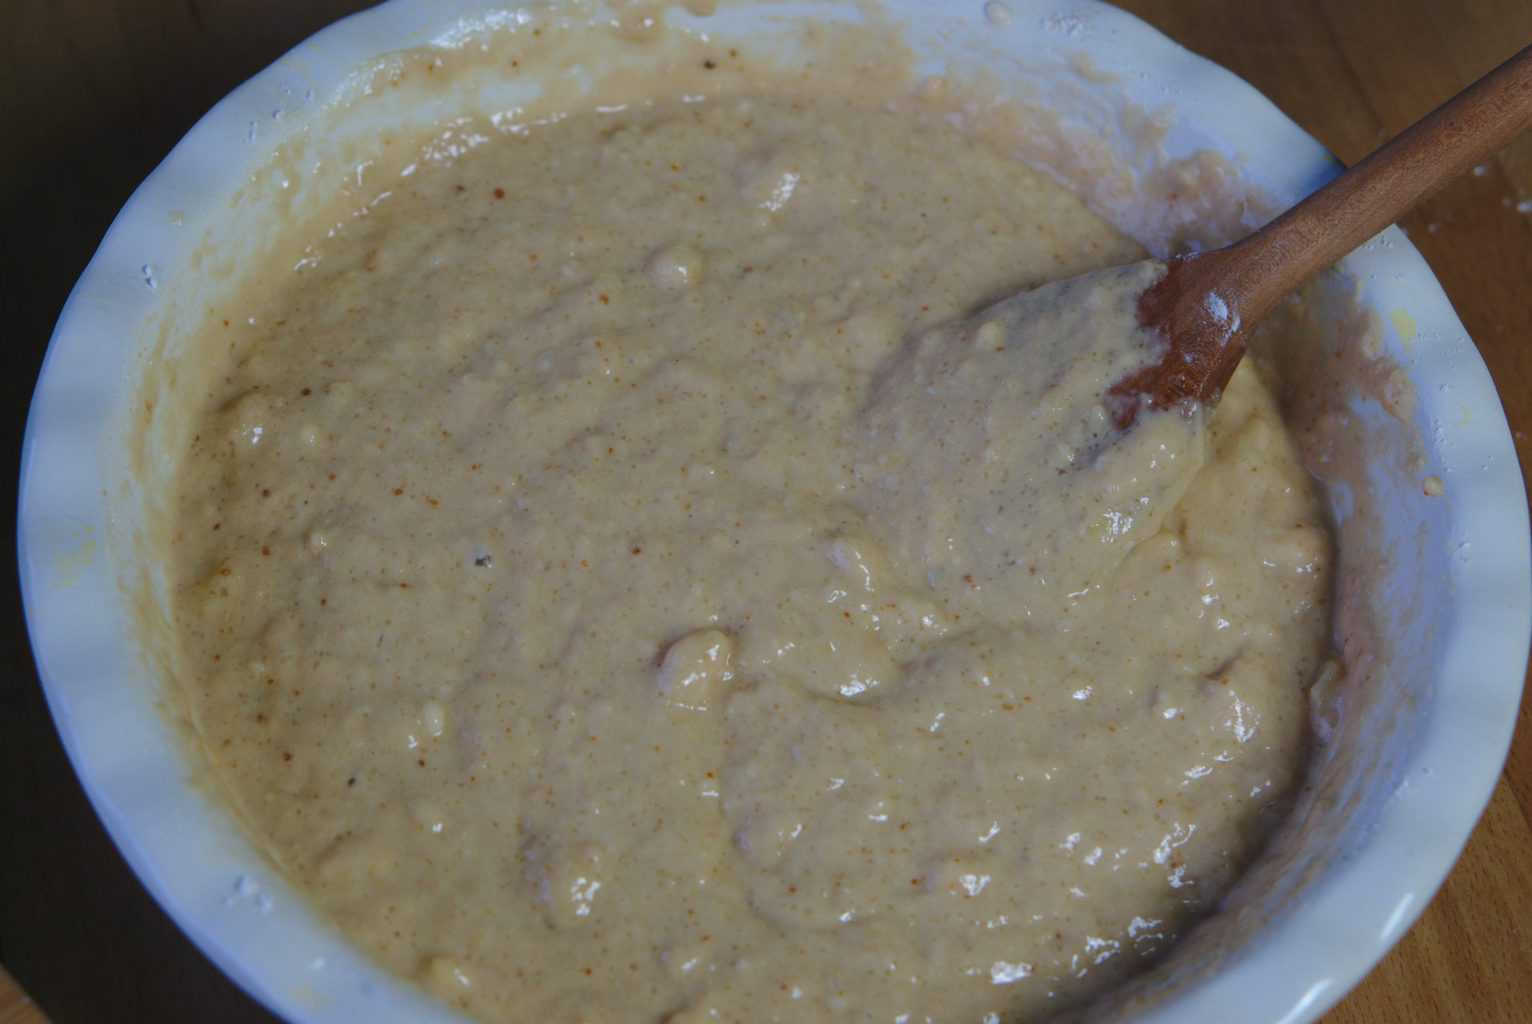 Mixing Vegan Banana muffins ingredients